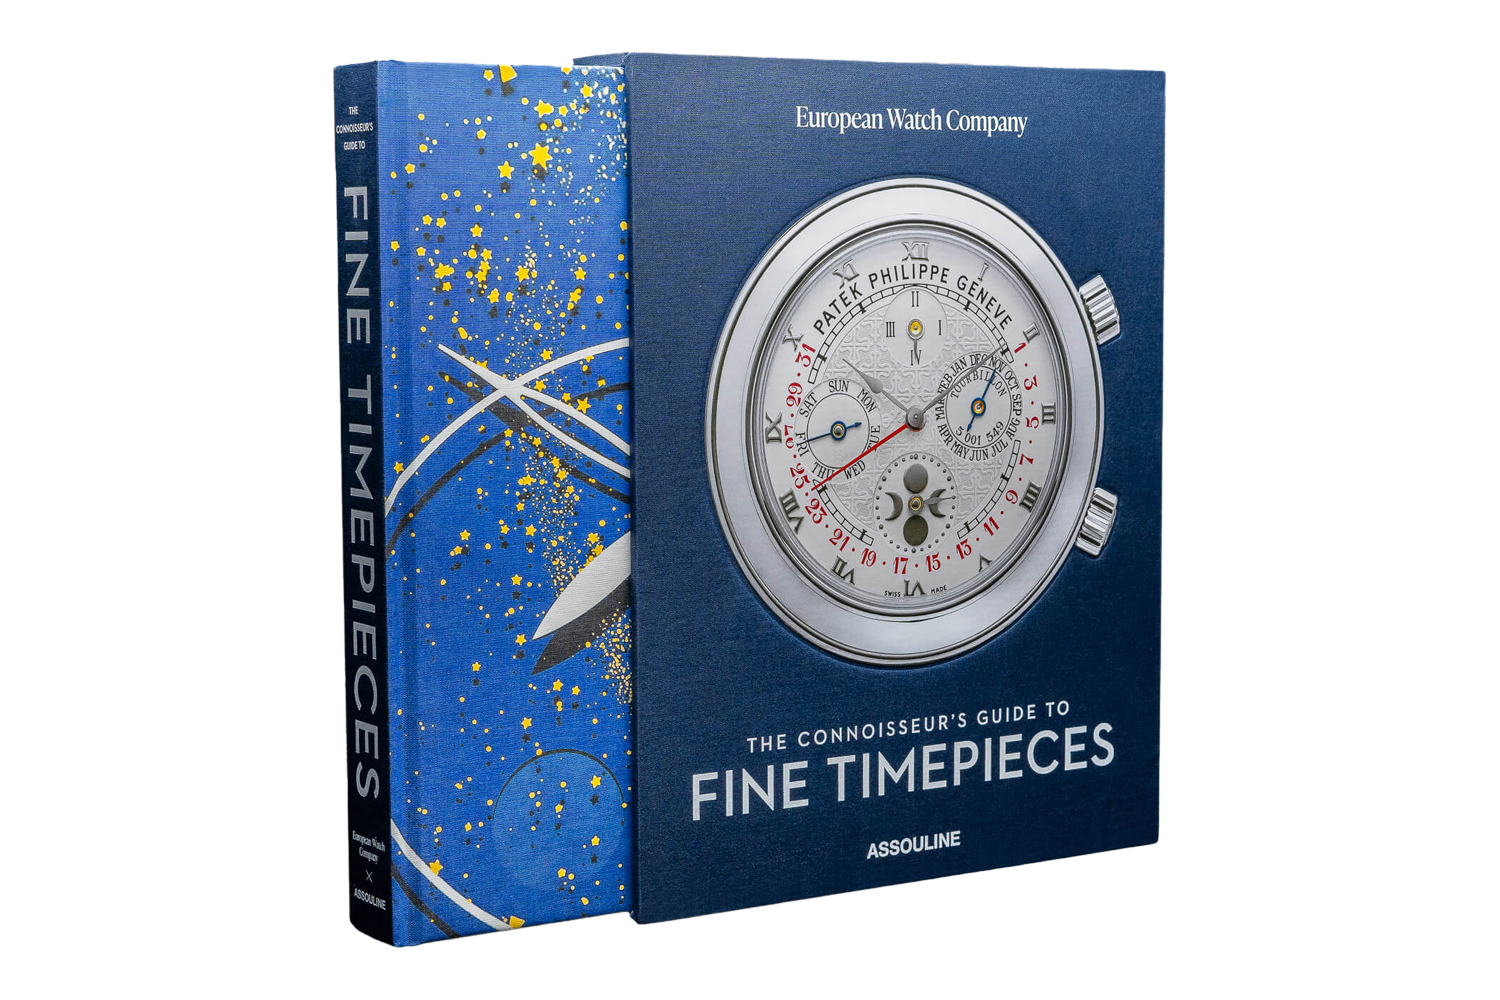 BONUS: “The Connoisseur’s Guide to Fine Timepieces”